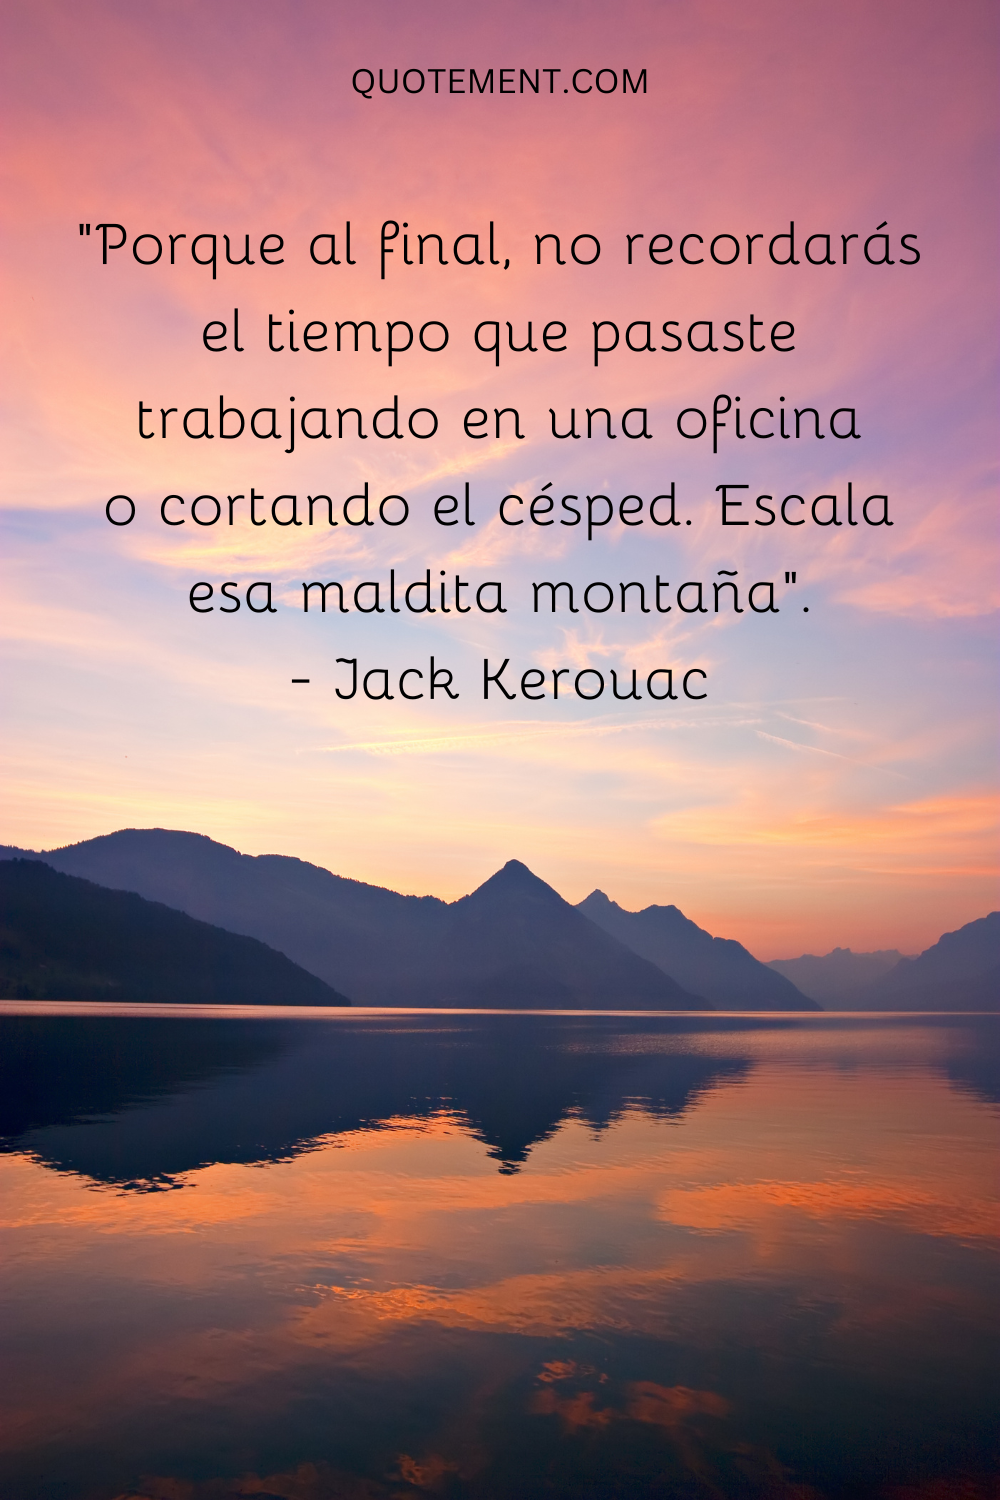 "Porque al final, no recordarás el tiempo que pasaste trabajando en una oficina o cortando el césped. Escala esa maldita montaña". - Jack Kerouac